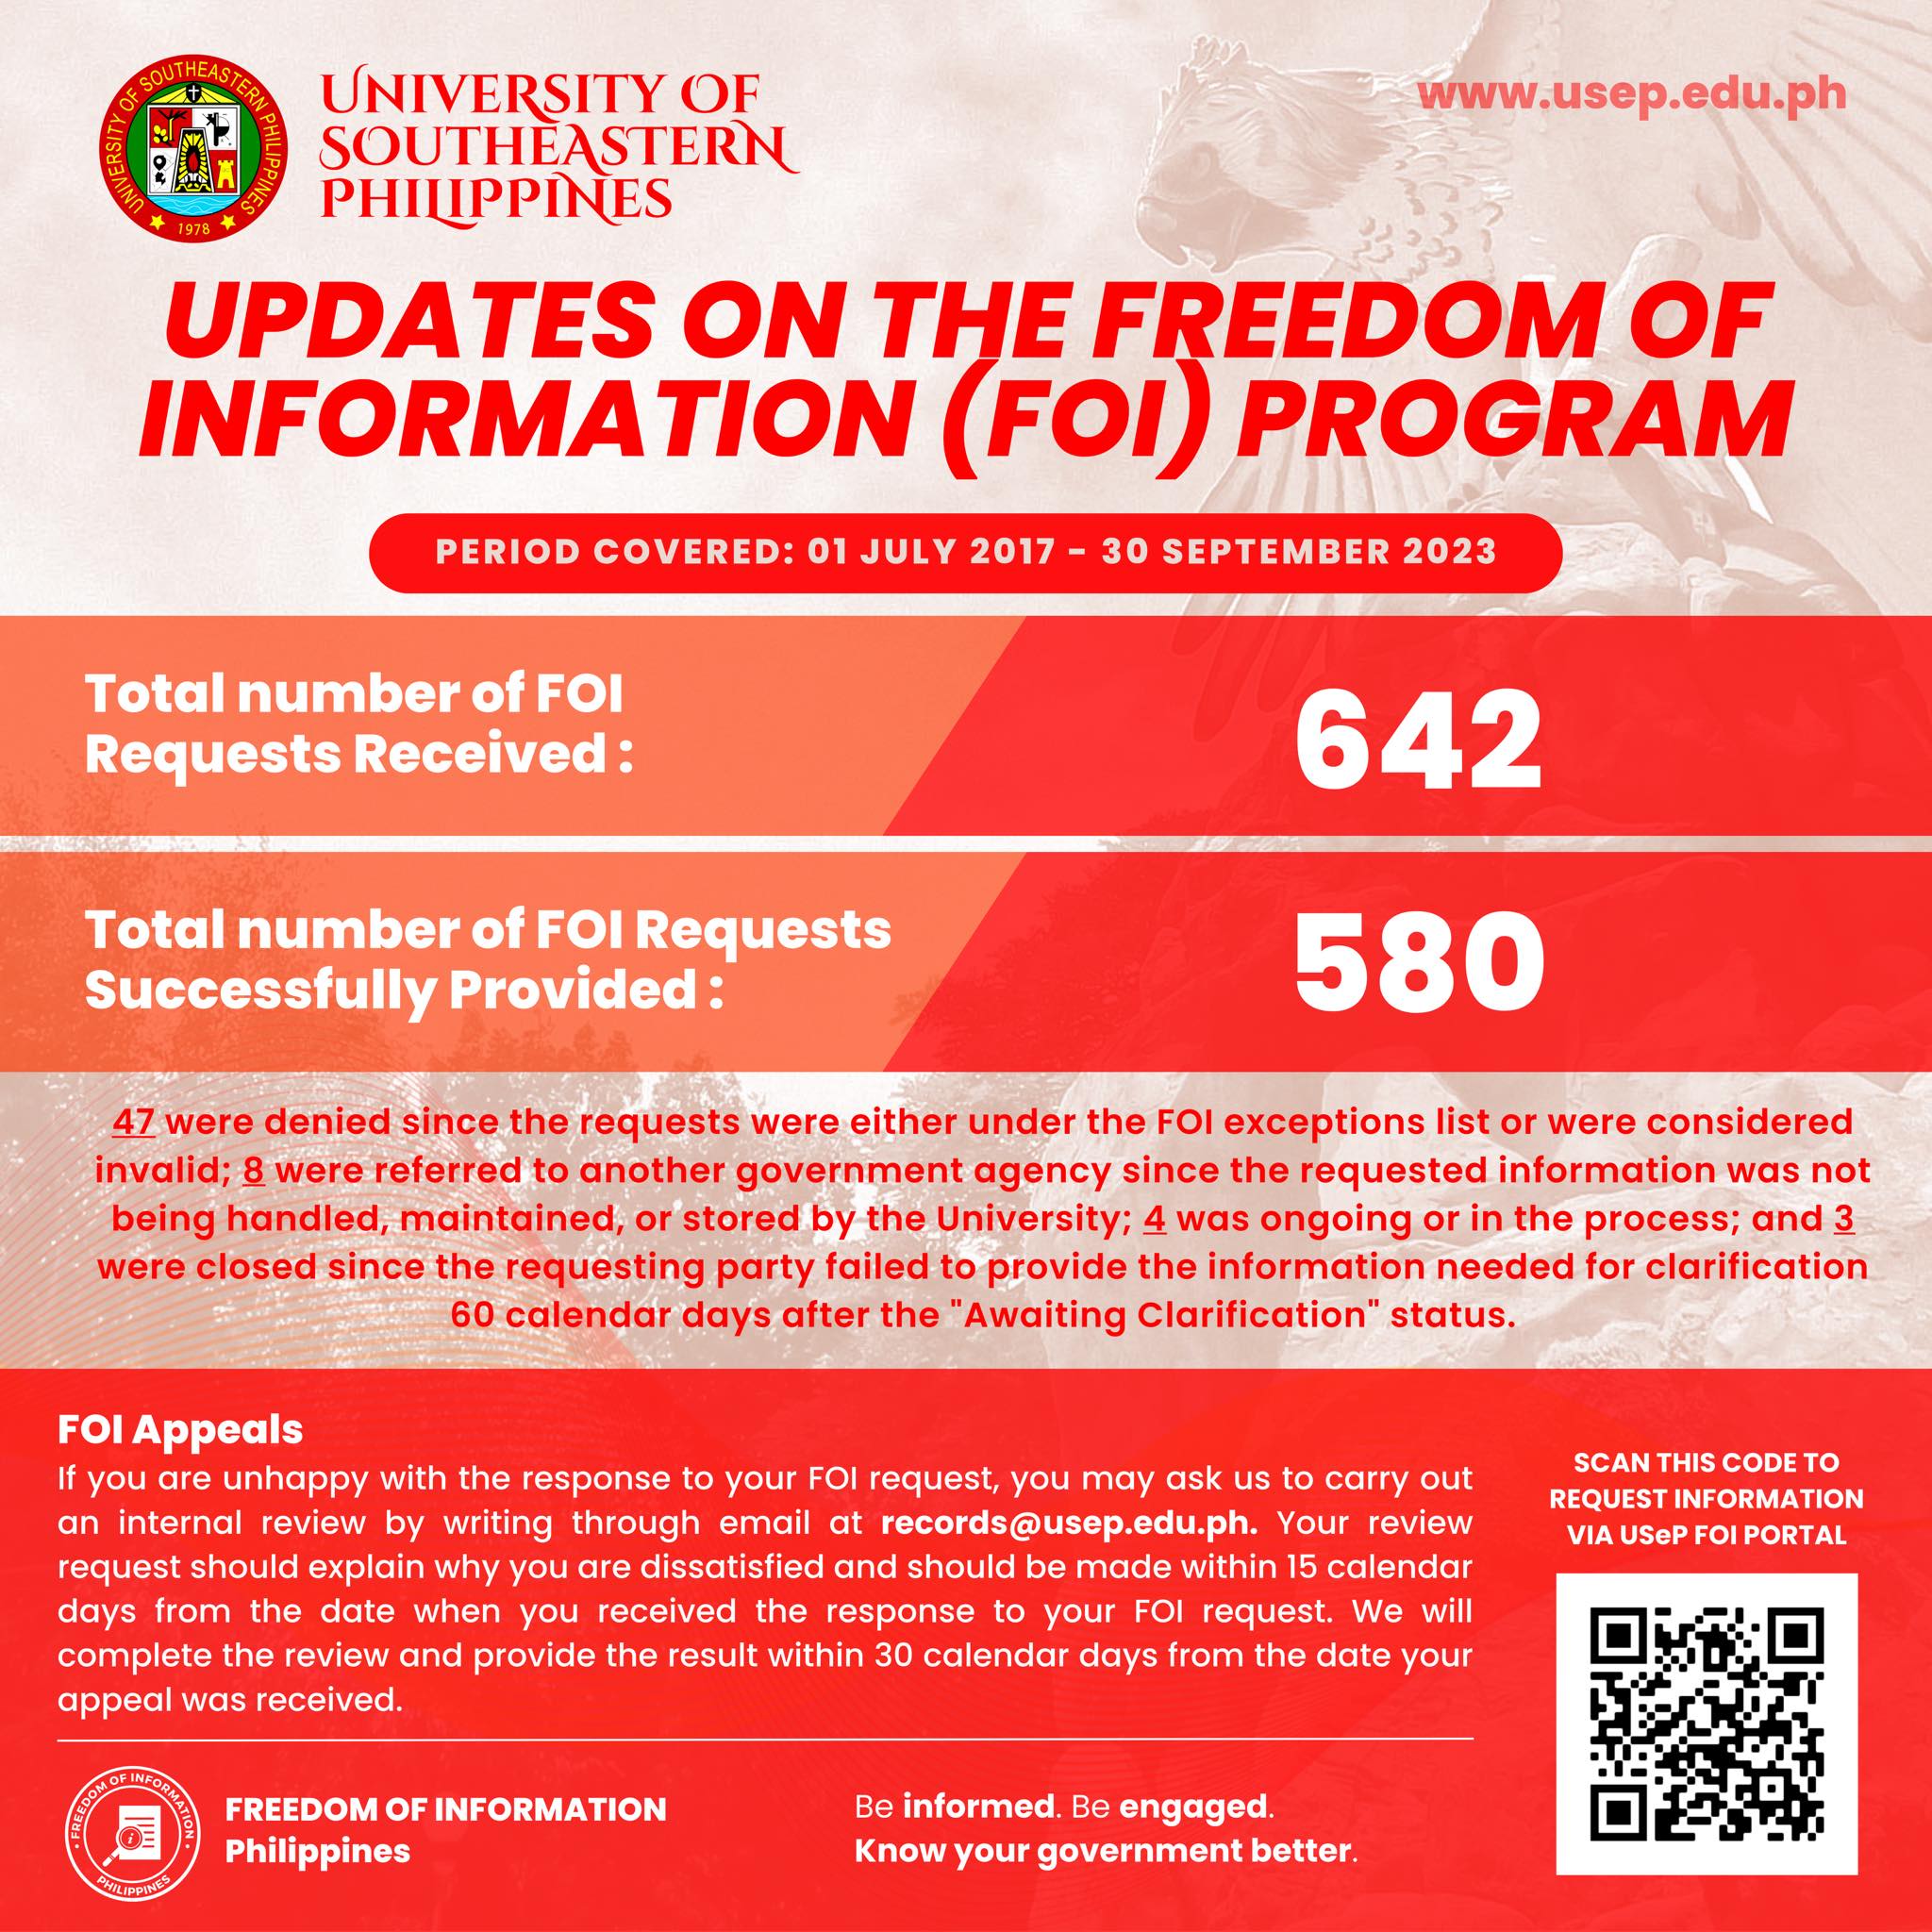 USeP FOI Program update as of September 2023